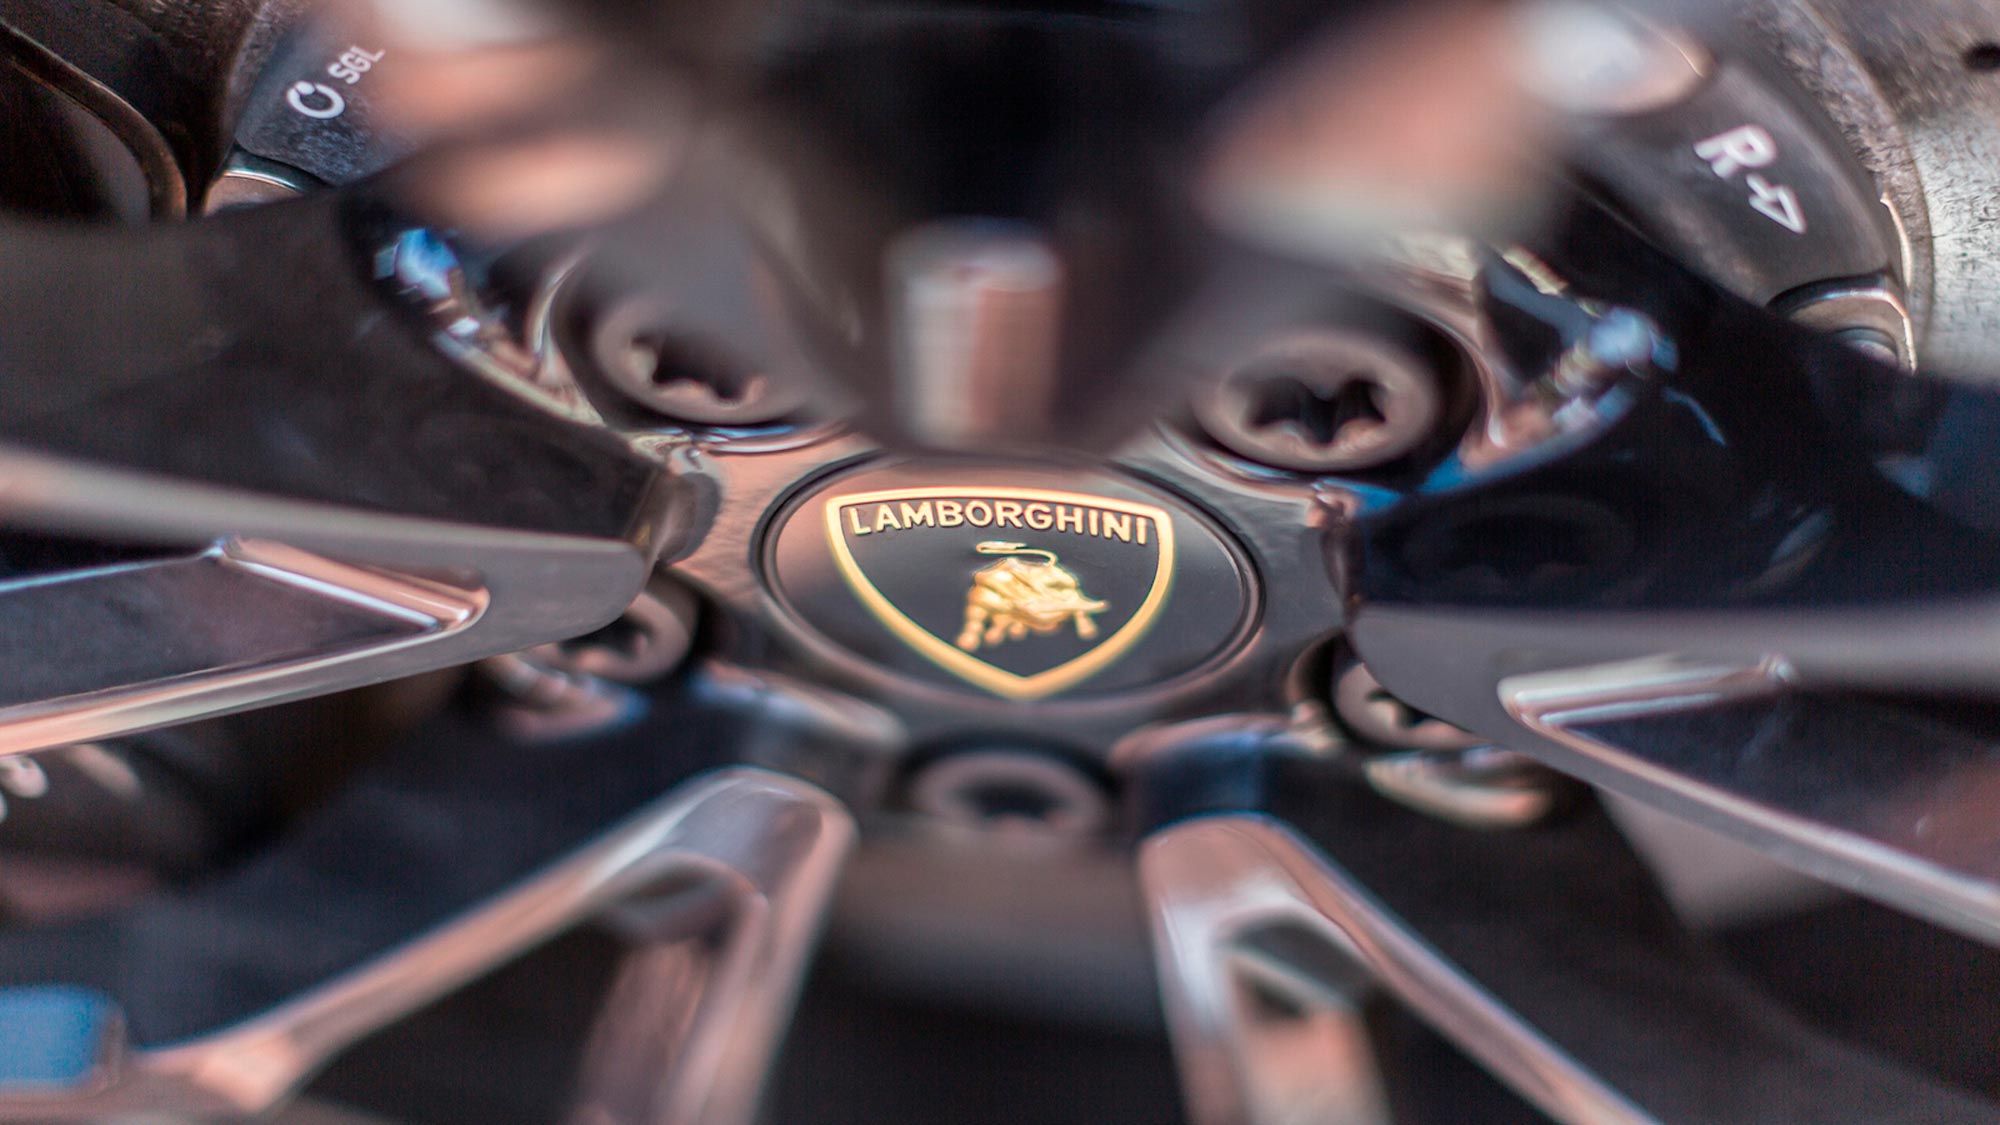 Lamborghini Brand | Emanuele Cozzo